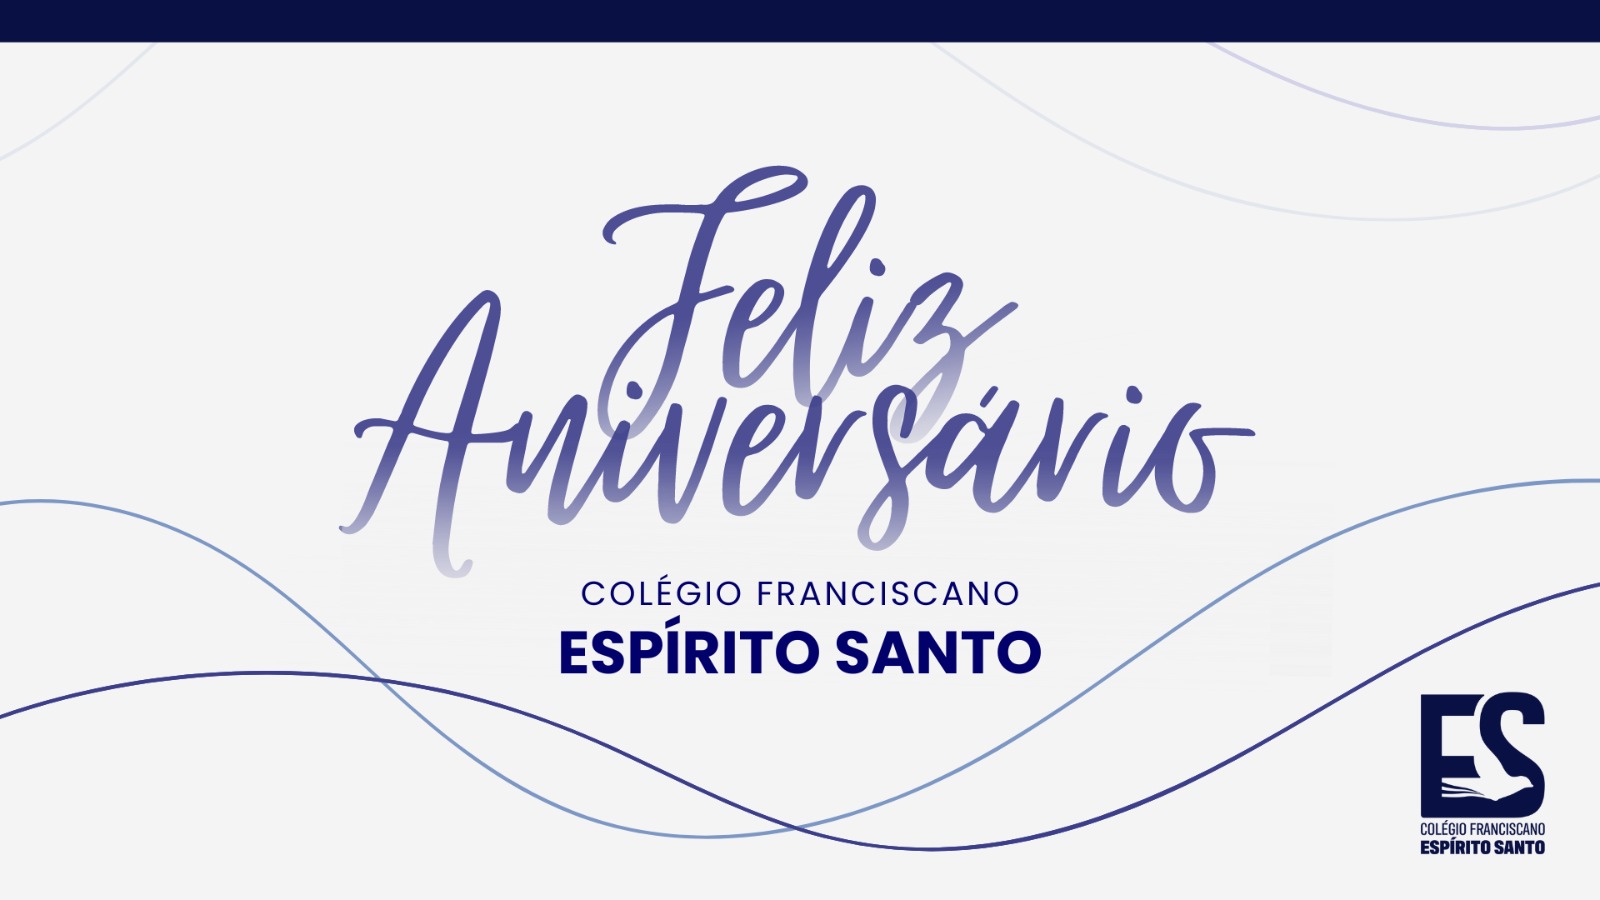 Parabéns ESPIRITO SANTO! 119 anos de muita história. 